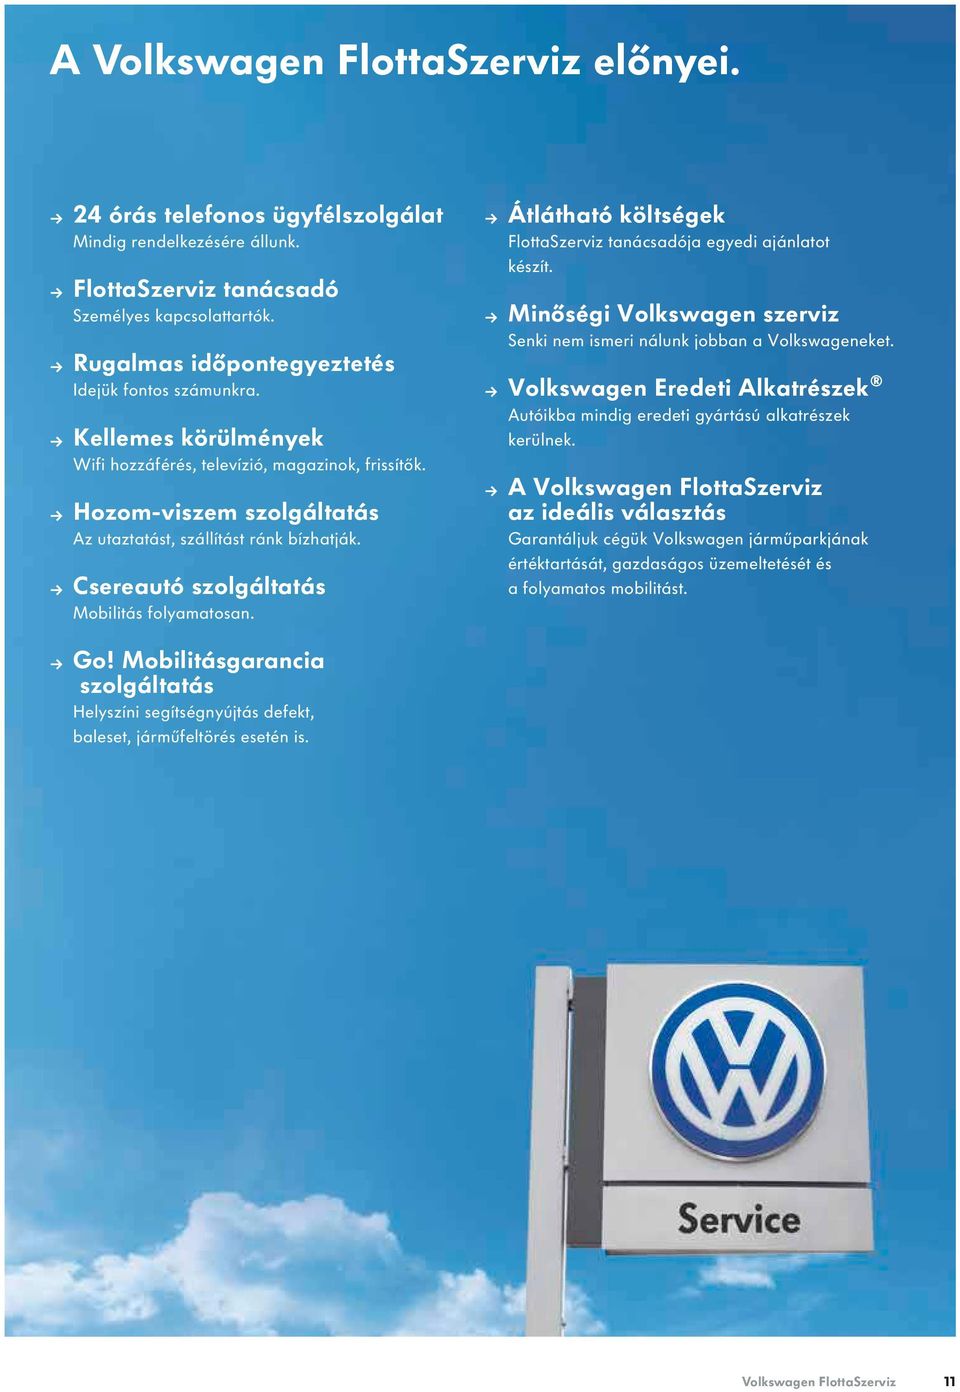 Csereautó szolgáltatás Mobilitás folyamatosan. Átlátható költségek FlottaSzerviz tanácsadója egyedi ajánlatot készít. Minőségi Volkswagen szerviz Senki nem ismeri nálunk jobban a Volkswageneket.